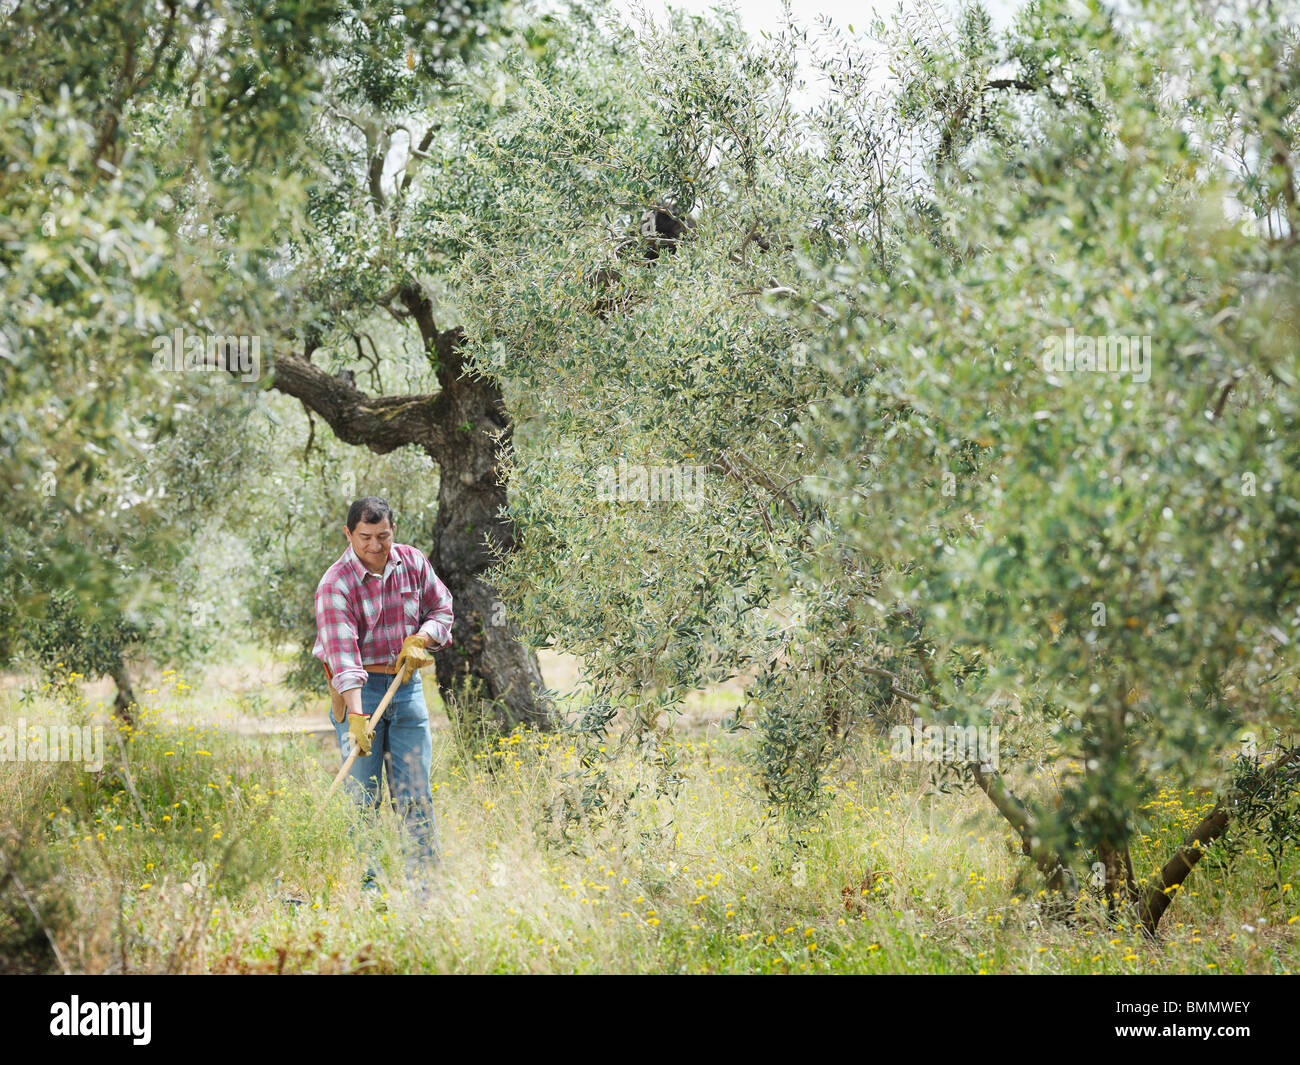 El hombre en el olivar de rastrillado Foto de stock